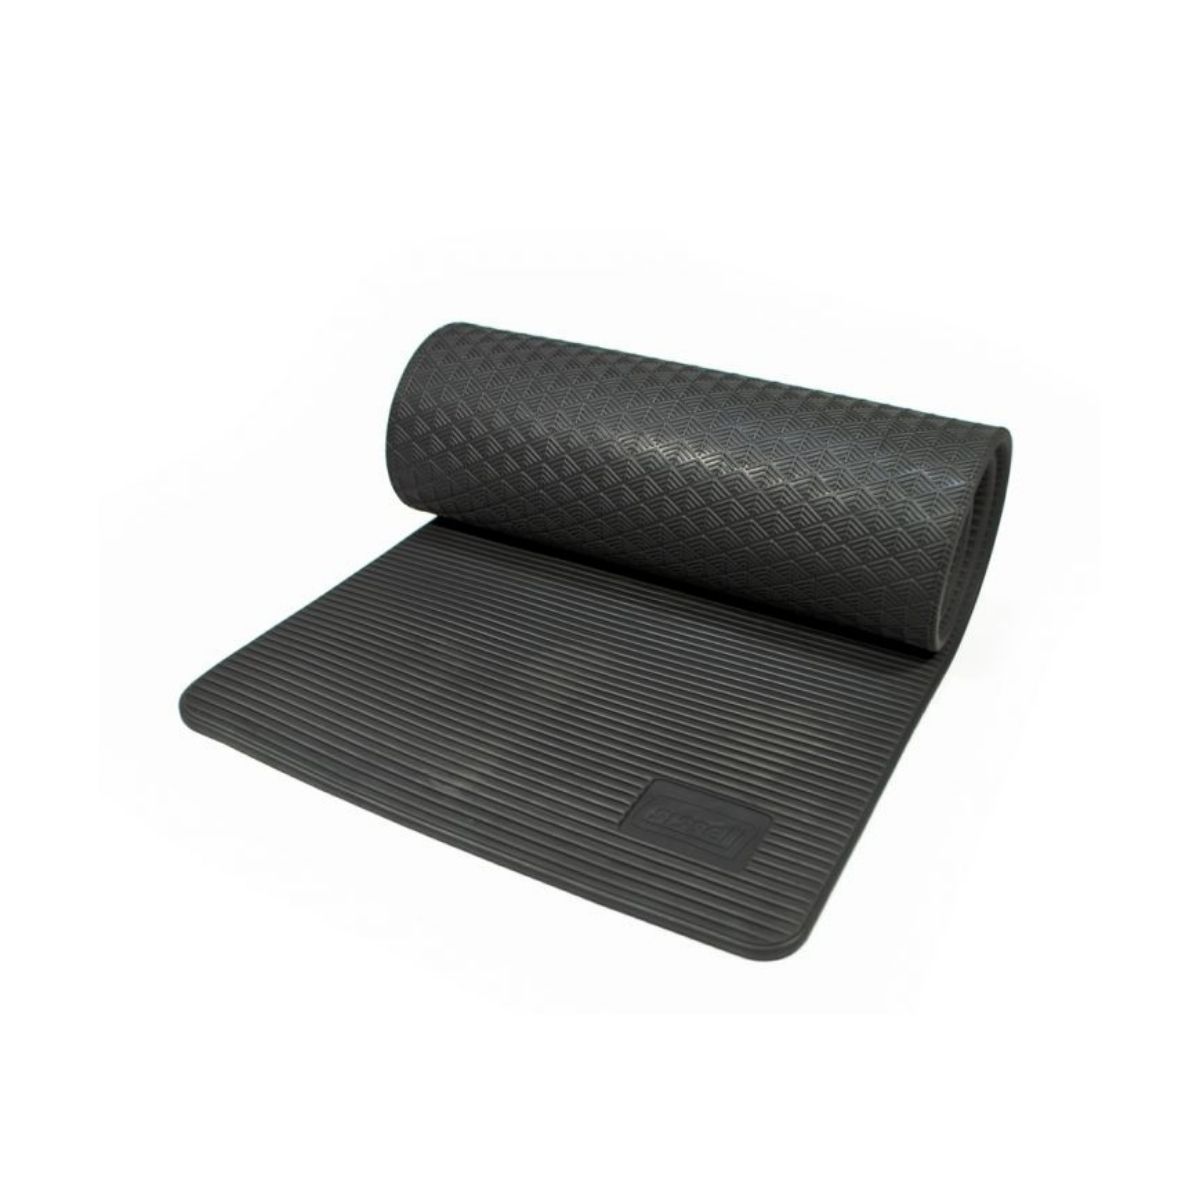 SISSEL Superior Mat: Materassino Professionale da 1,5 cm PVC-Free